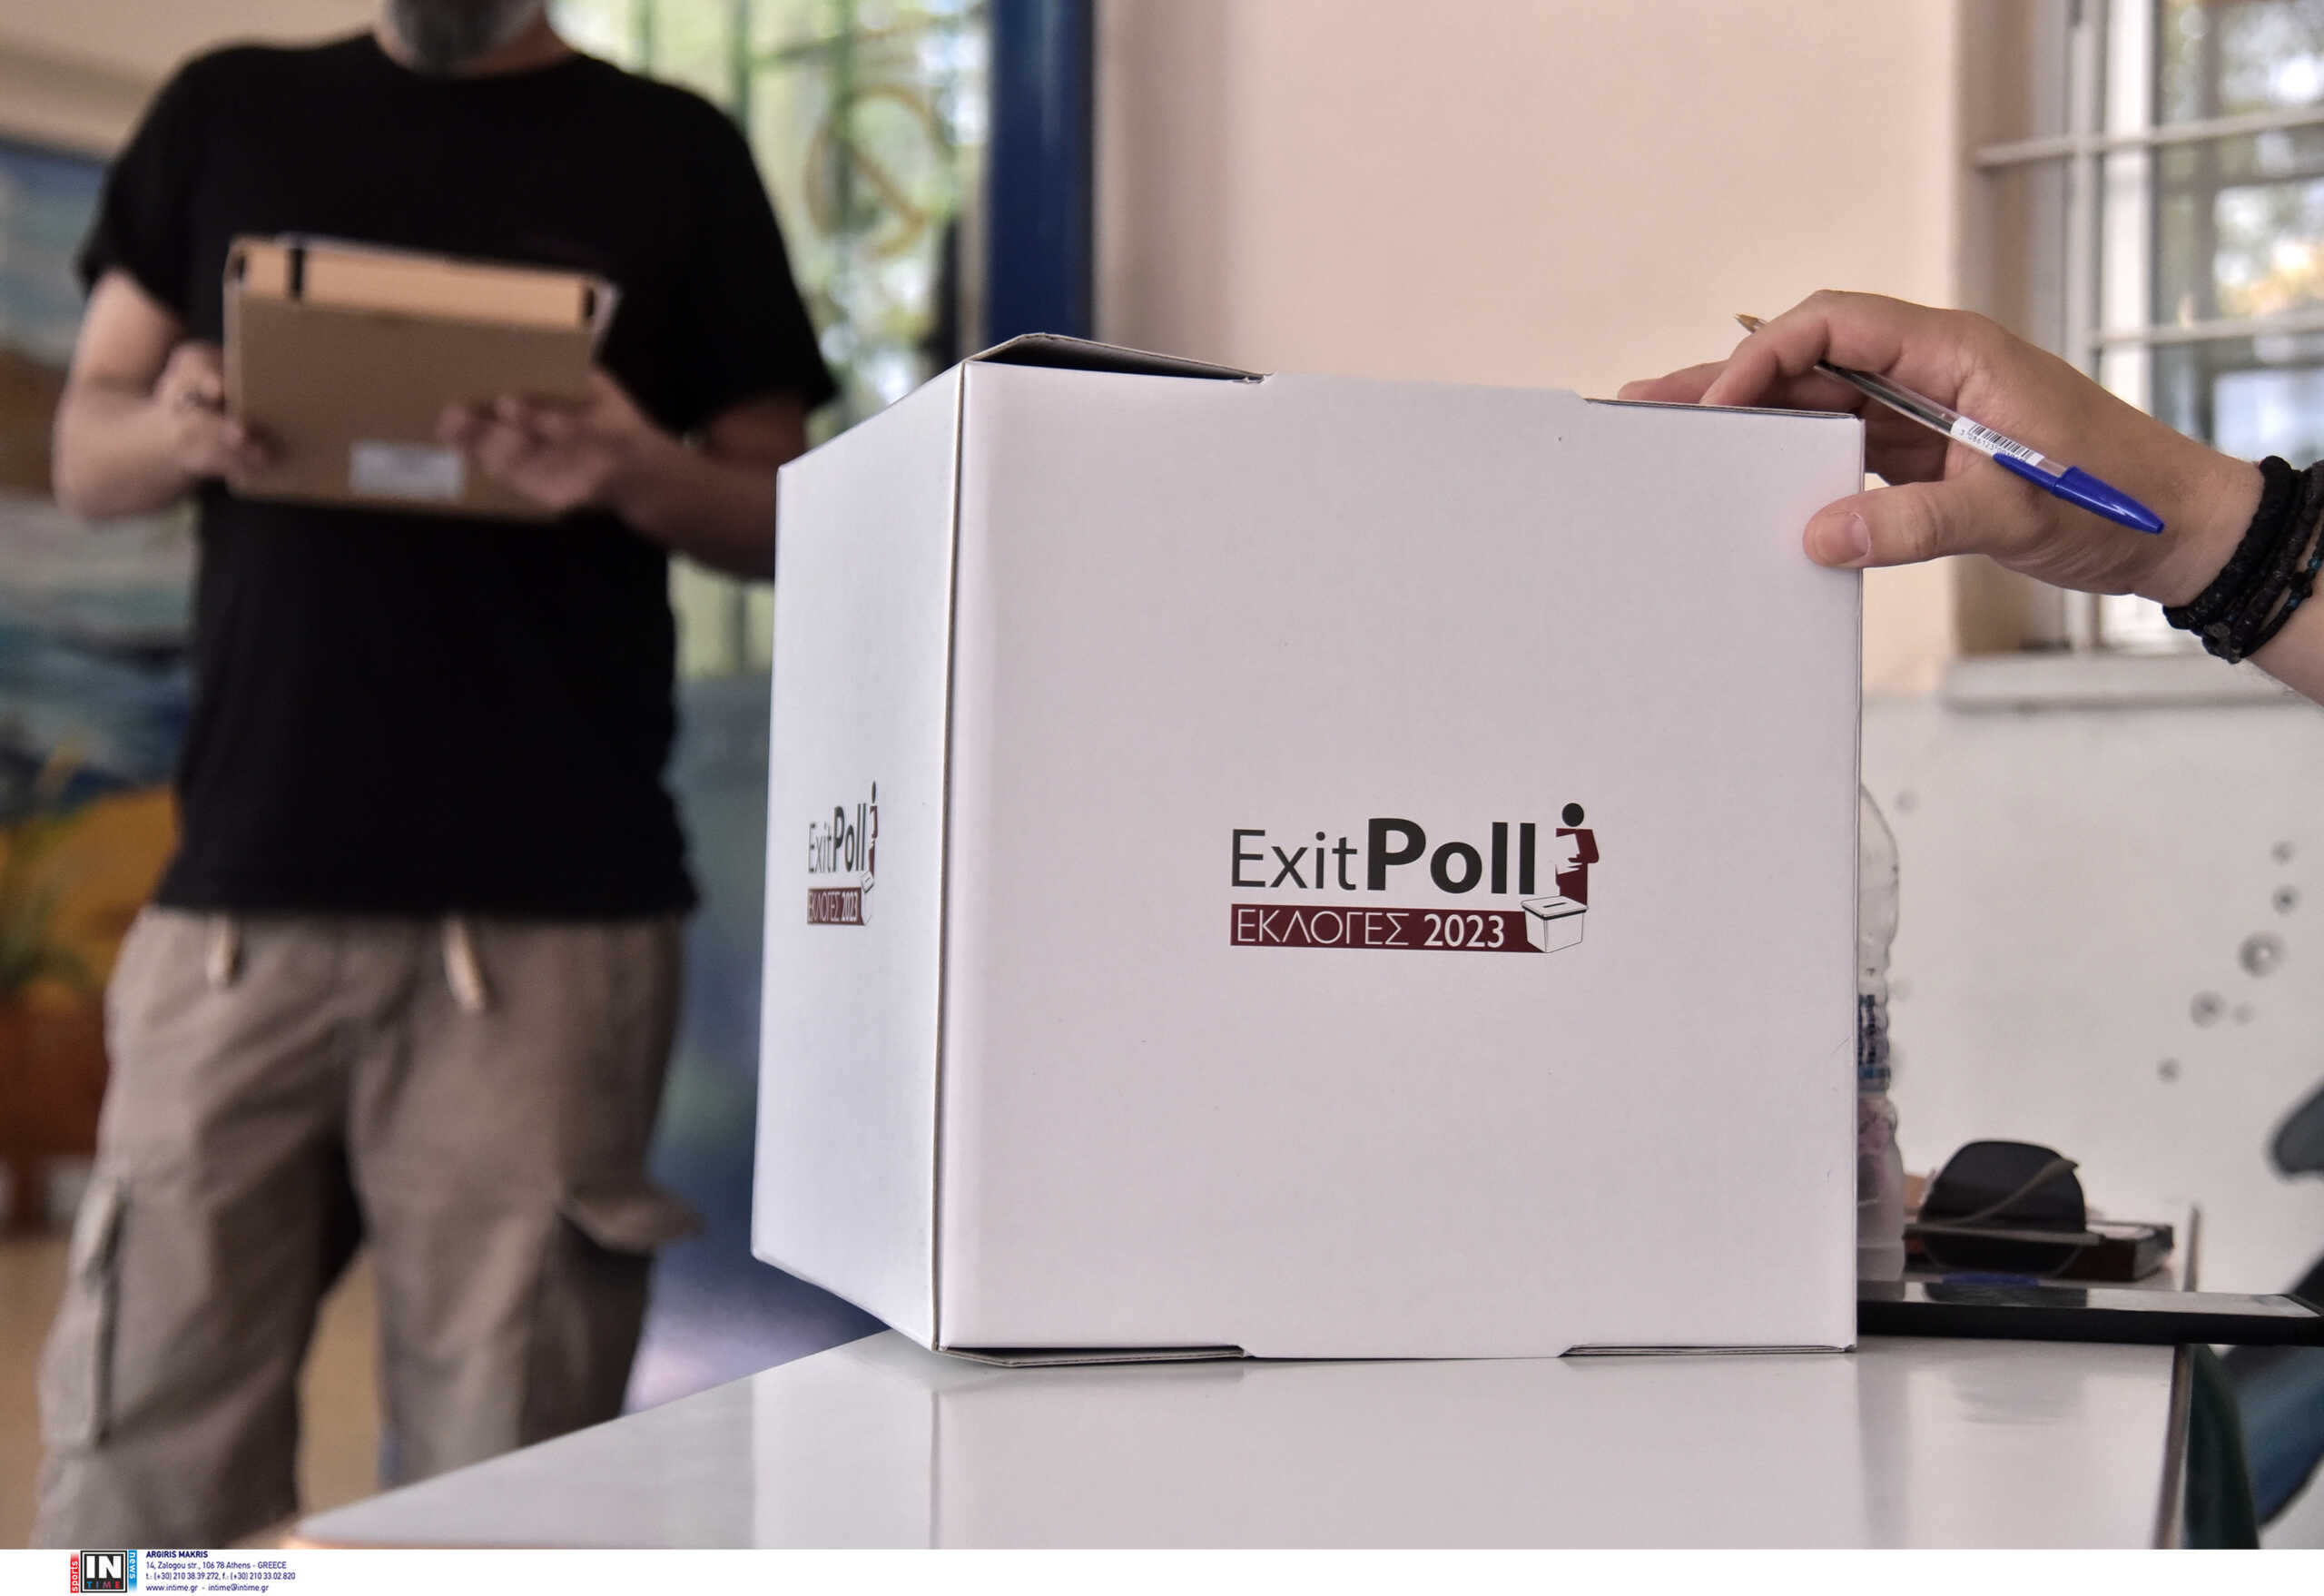 Εκλογές 2023: Στις 19:00 το exit poll – Μετά τις 20:00 η πρώτη εκτίμηση εκλογικού αποτελέσματος